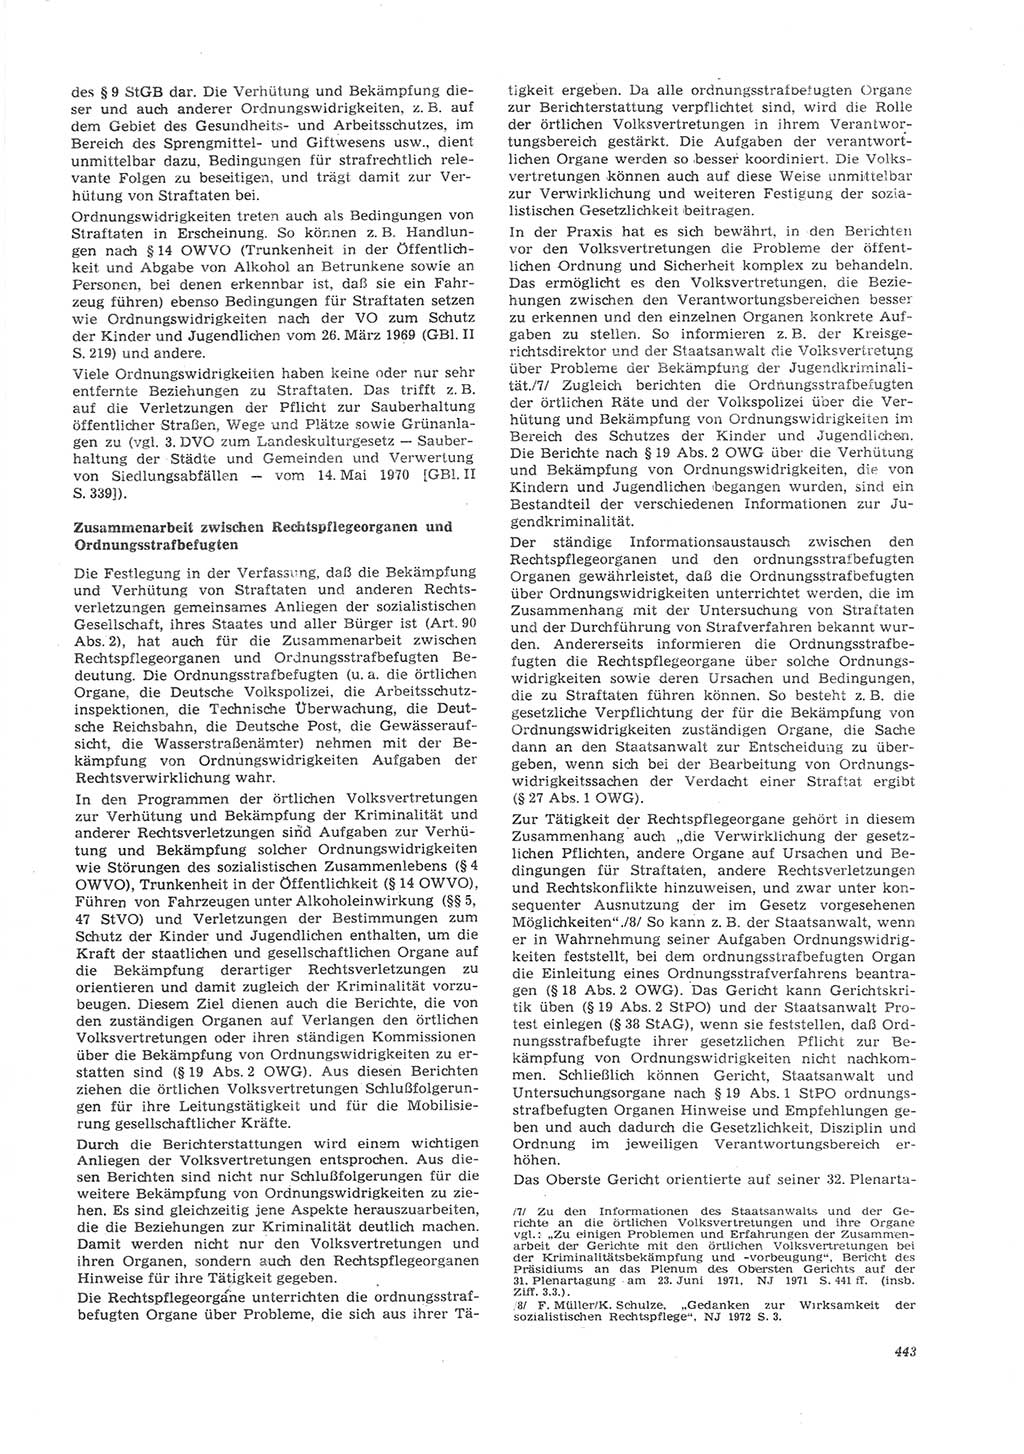 Neue Justiz (NJ), Zeitschrift für Recht und Rechtswissenschaft [Deutsche Demokratische Republik (DDR)], 26. Jahrgang 1972, Seite 443 (NJ DDR 1972, S. 443)